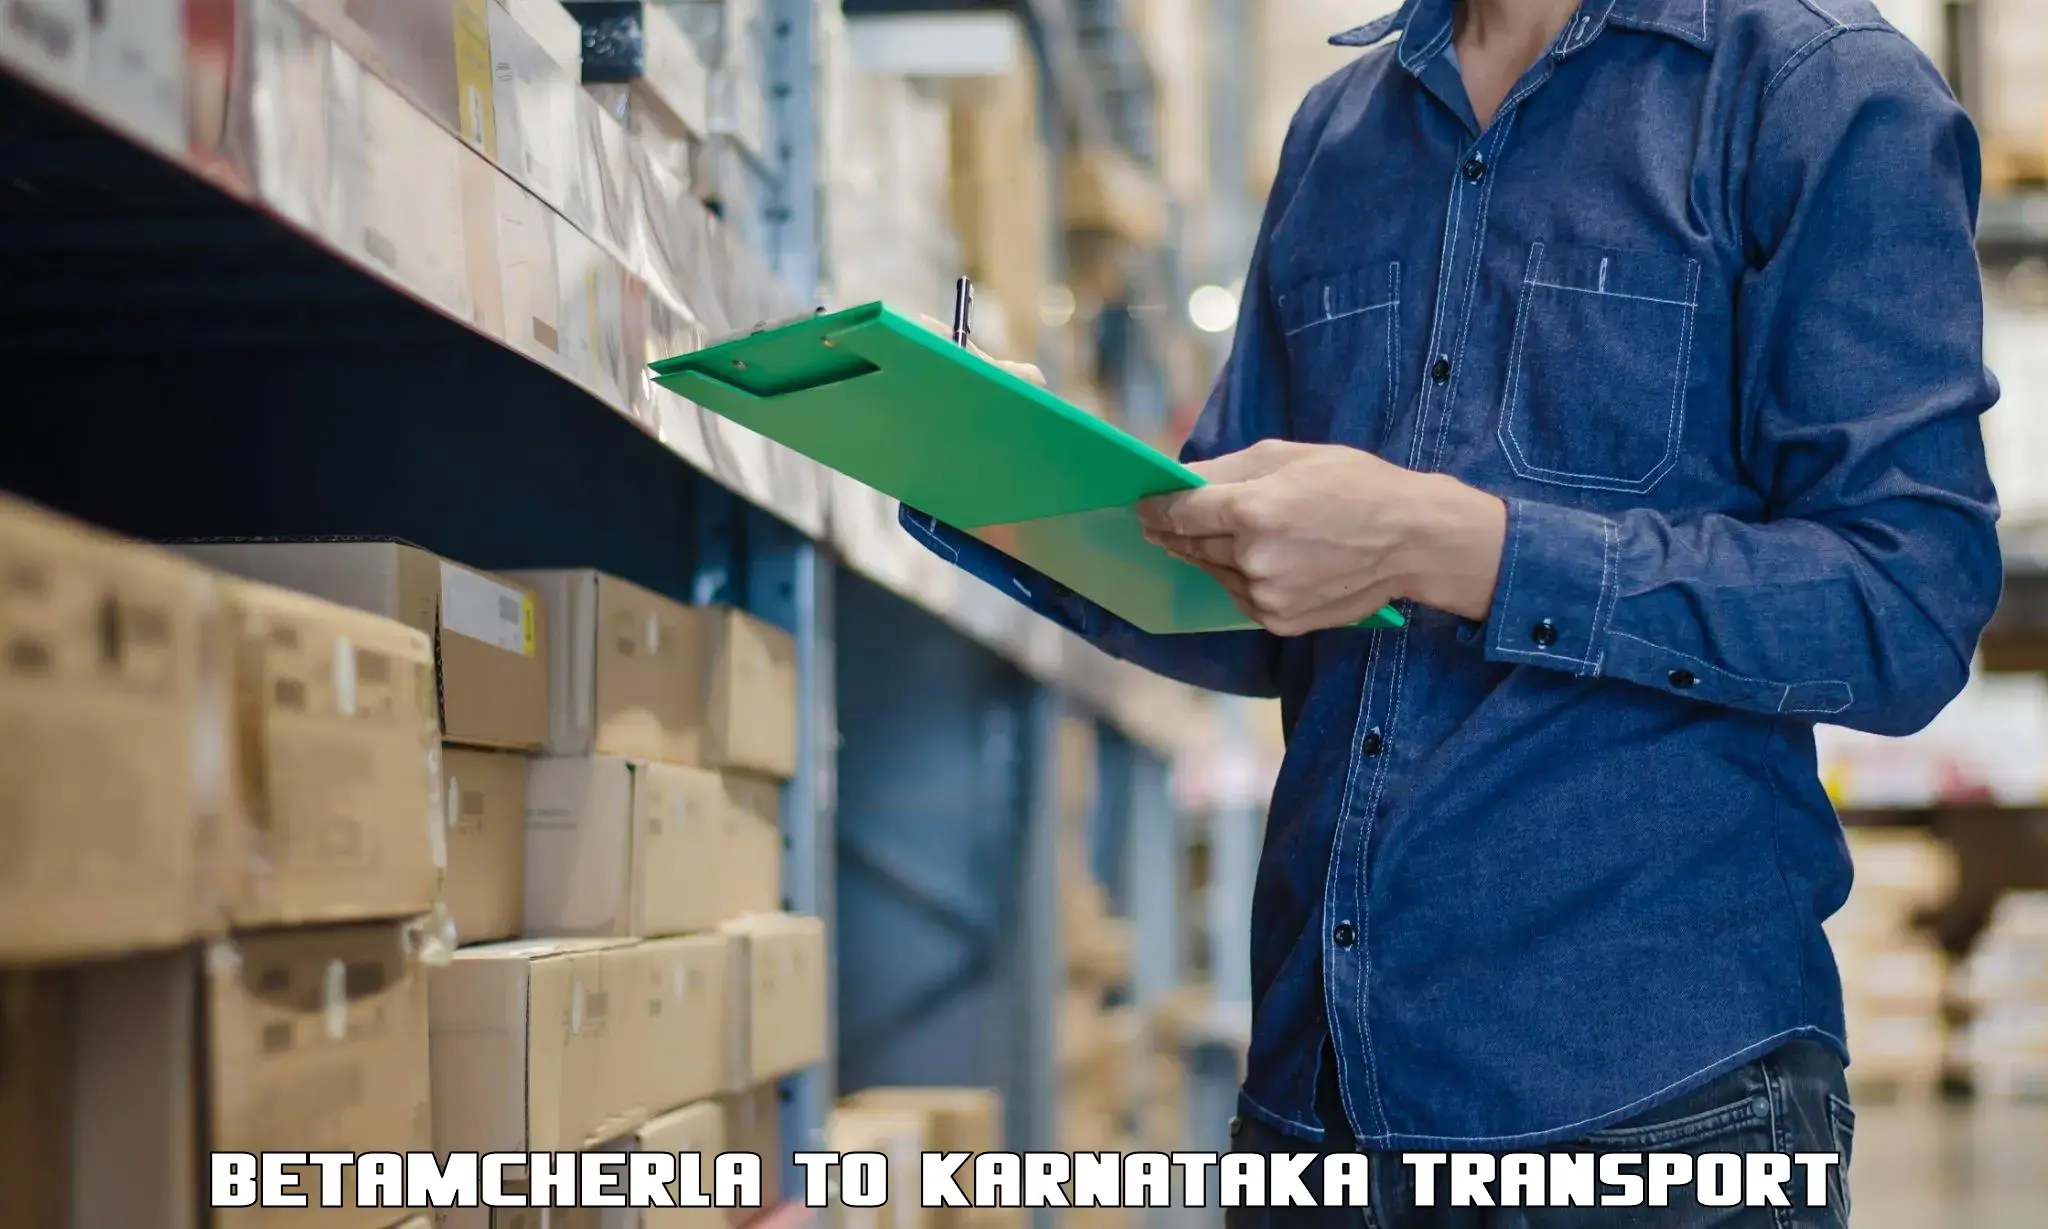 Cargo transportation services Betamcherla to Krishnarajanagara